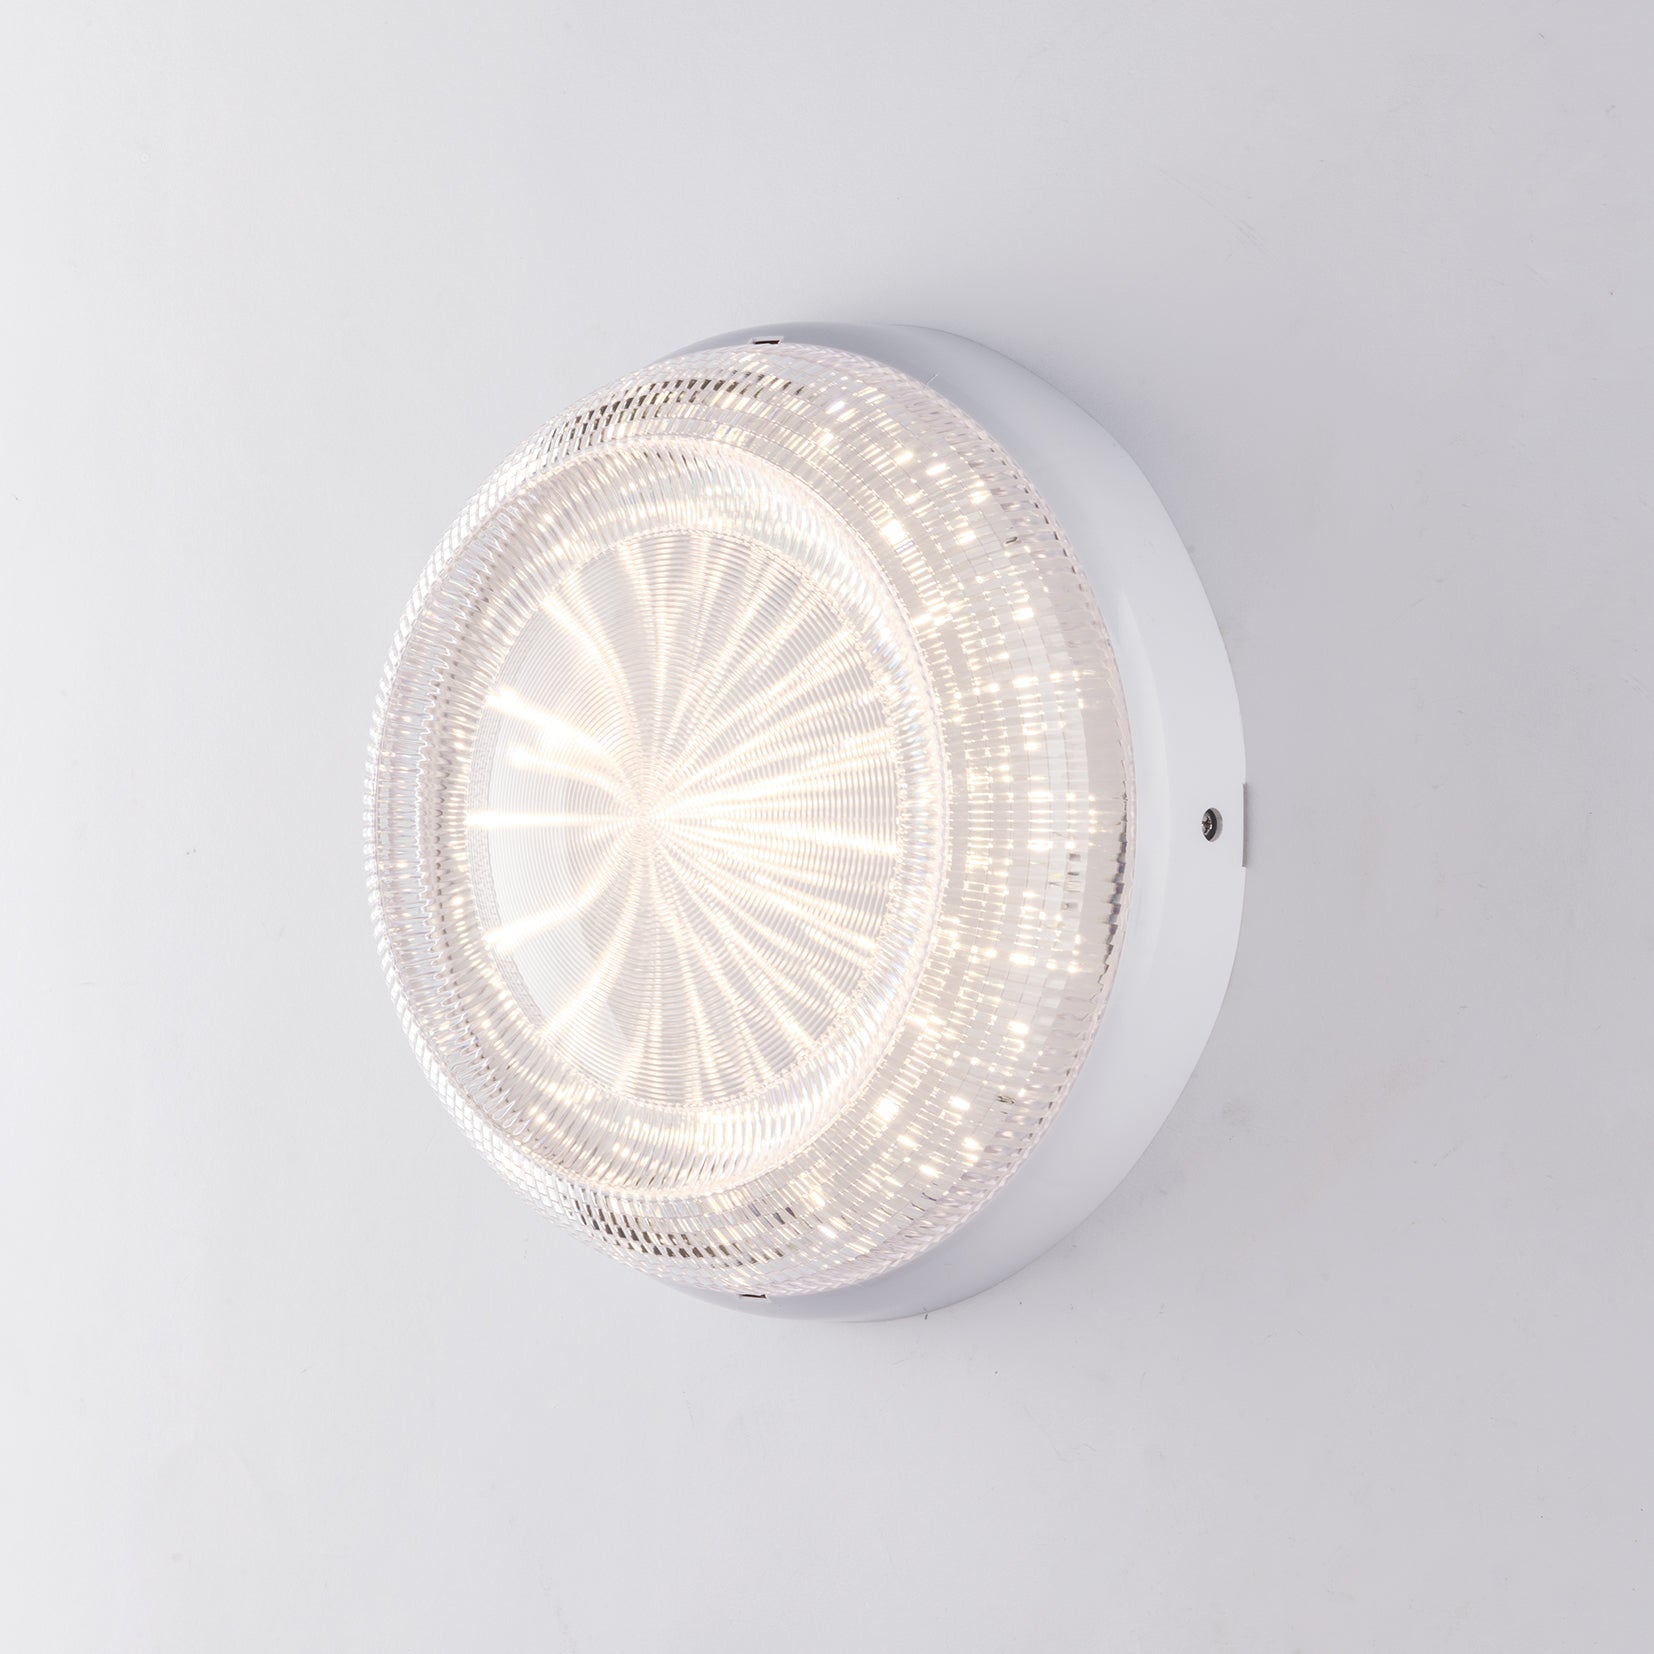 Plafón de exterior Capri con LED integrado, luz natural y difusor transparente efecto diamante. Disponible en dos tamaños 